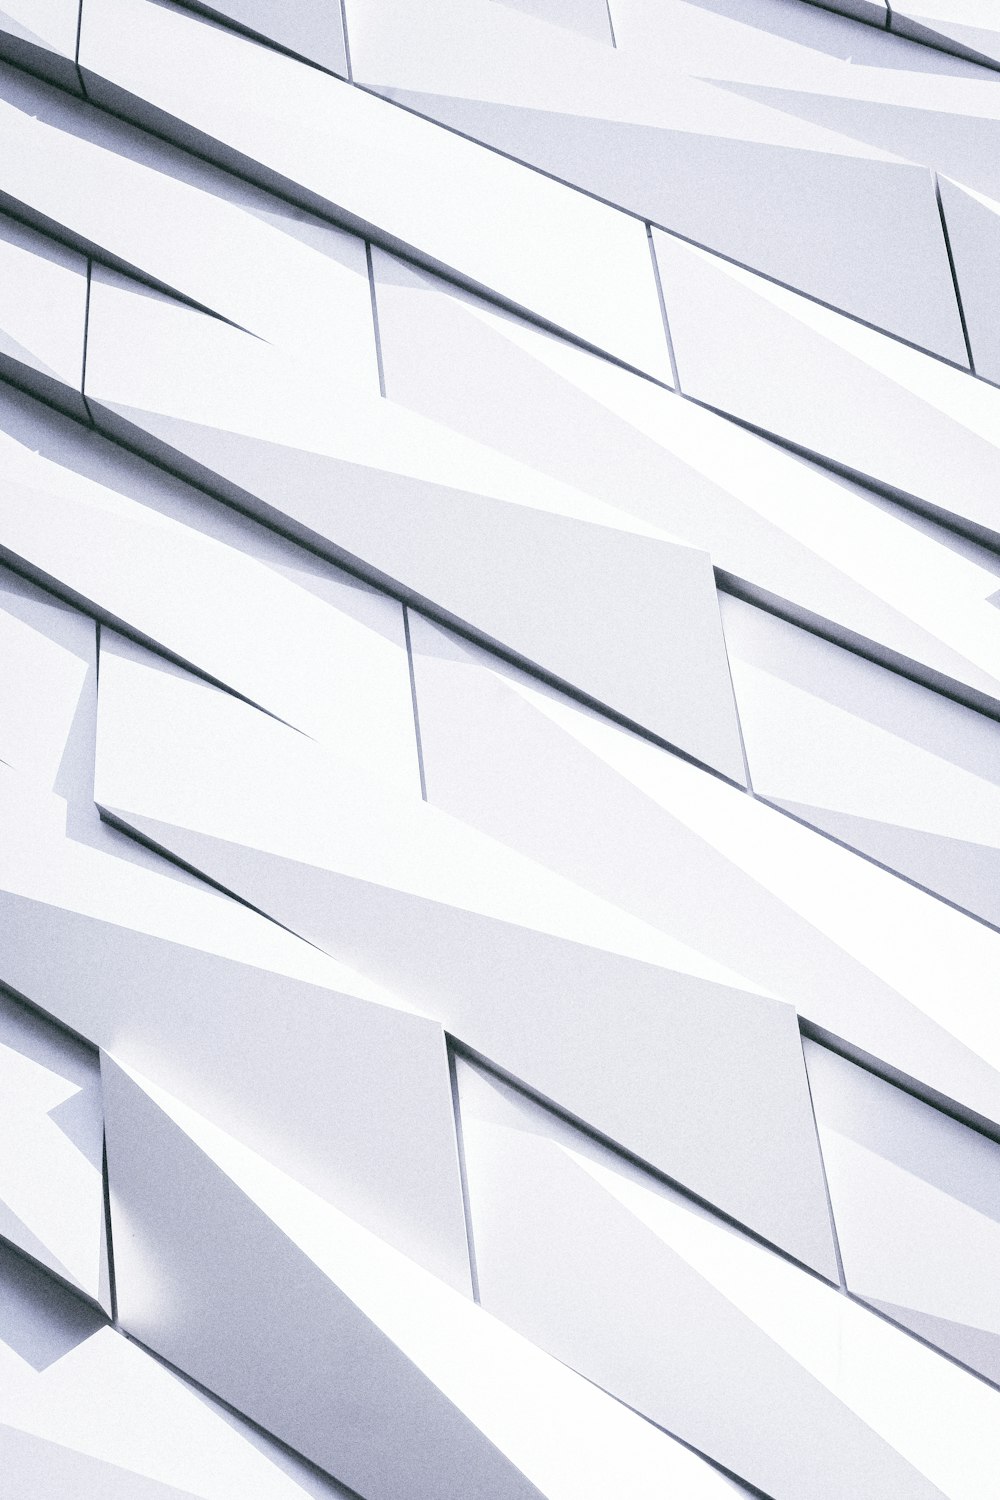 um close up de um edifício feito de azulejos brancos